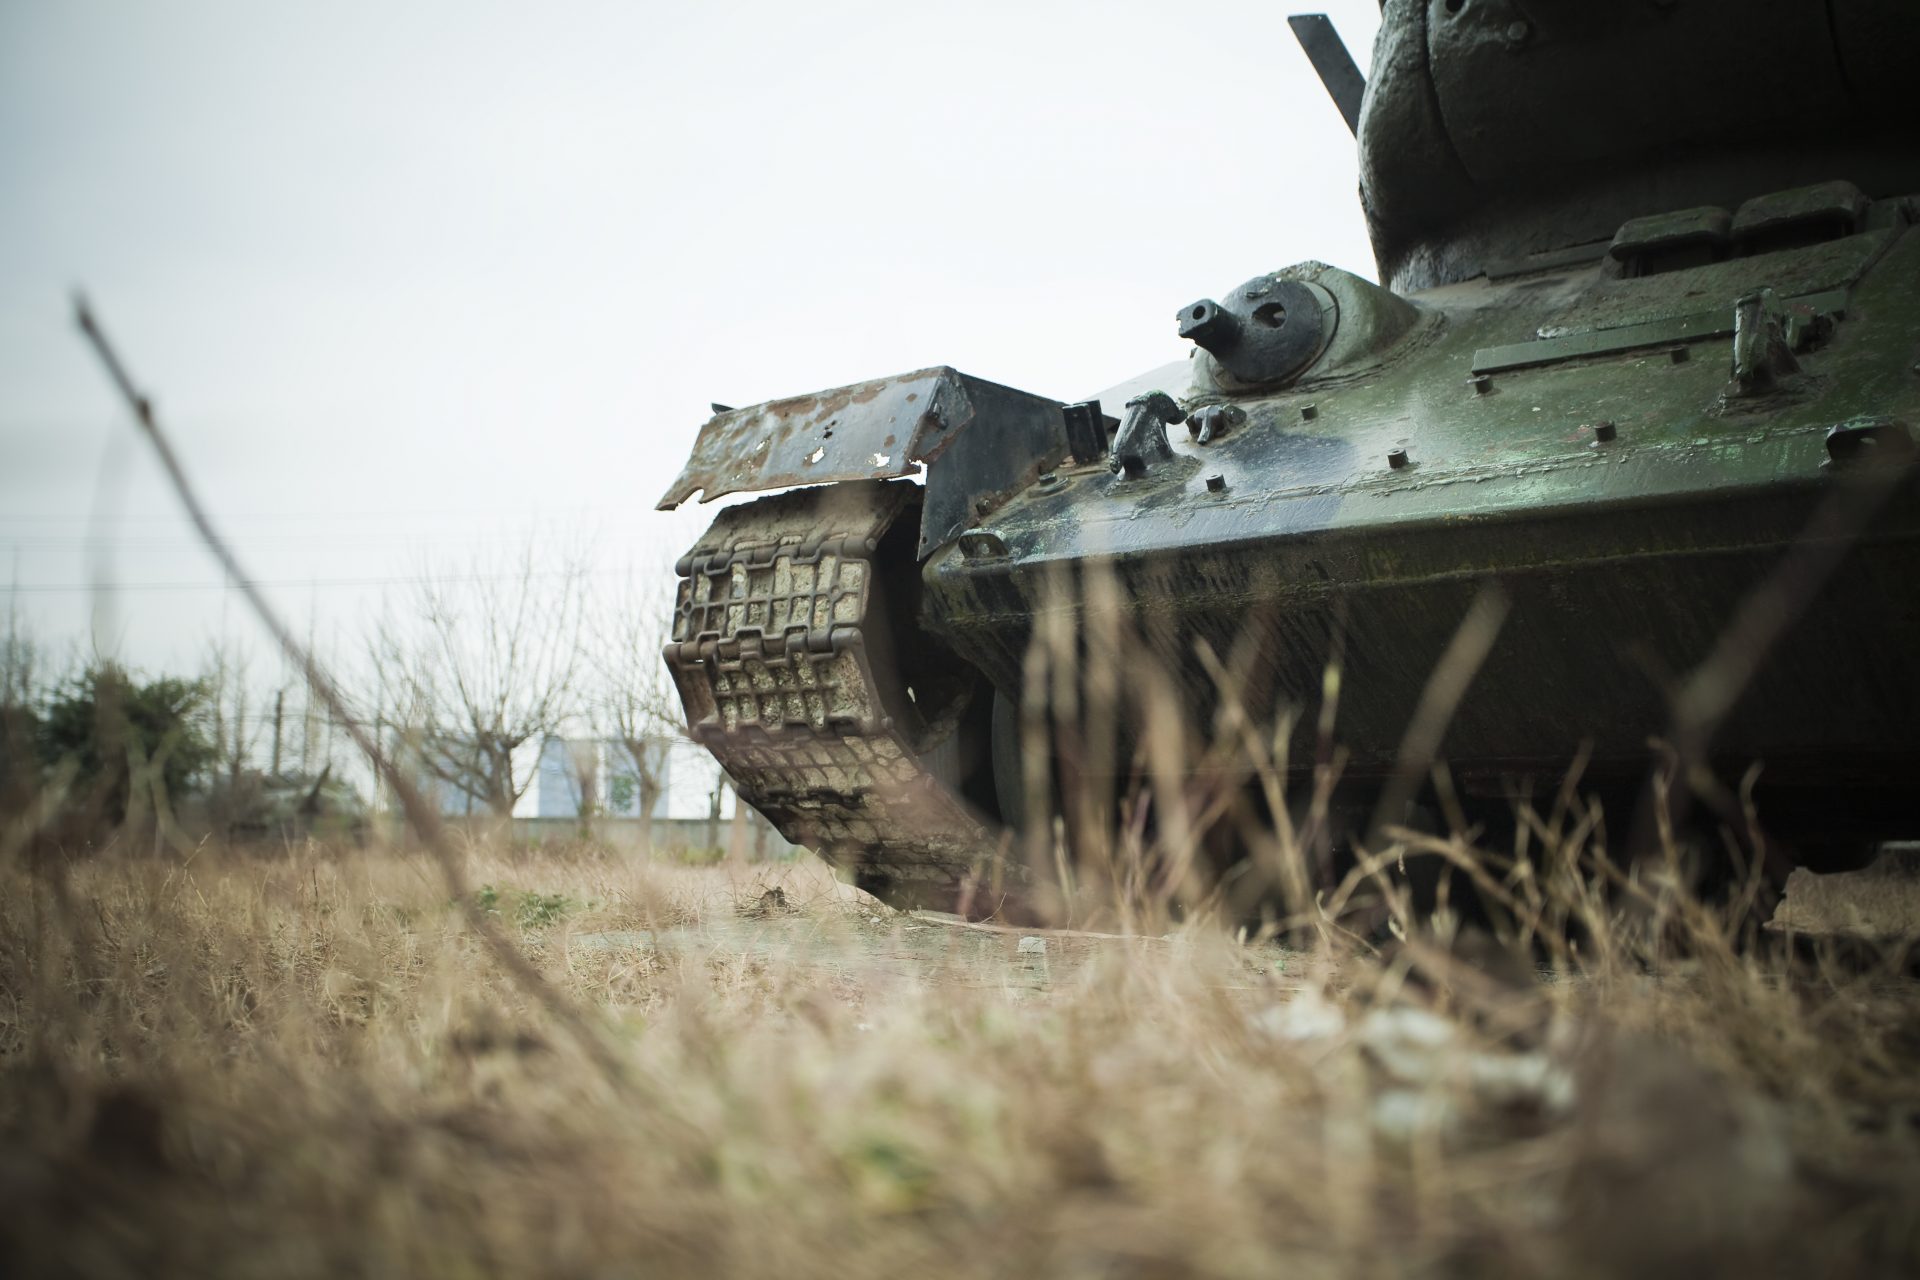 The BTR-90 was no match for Ukraine